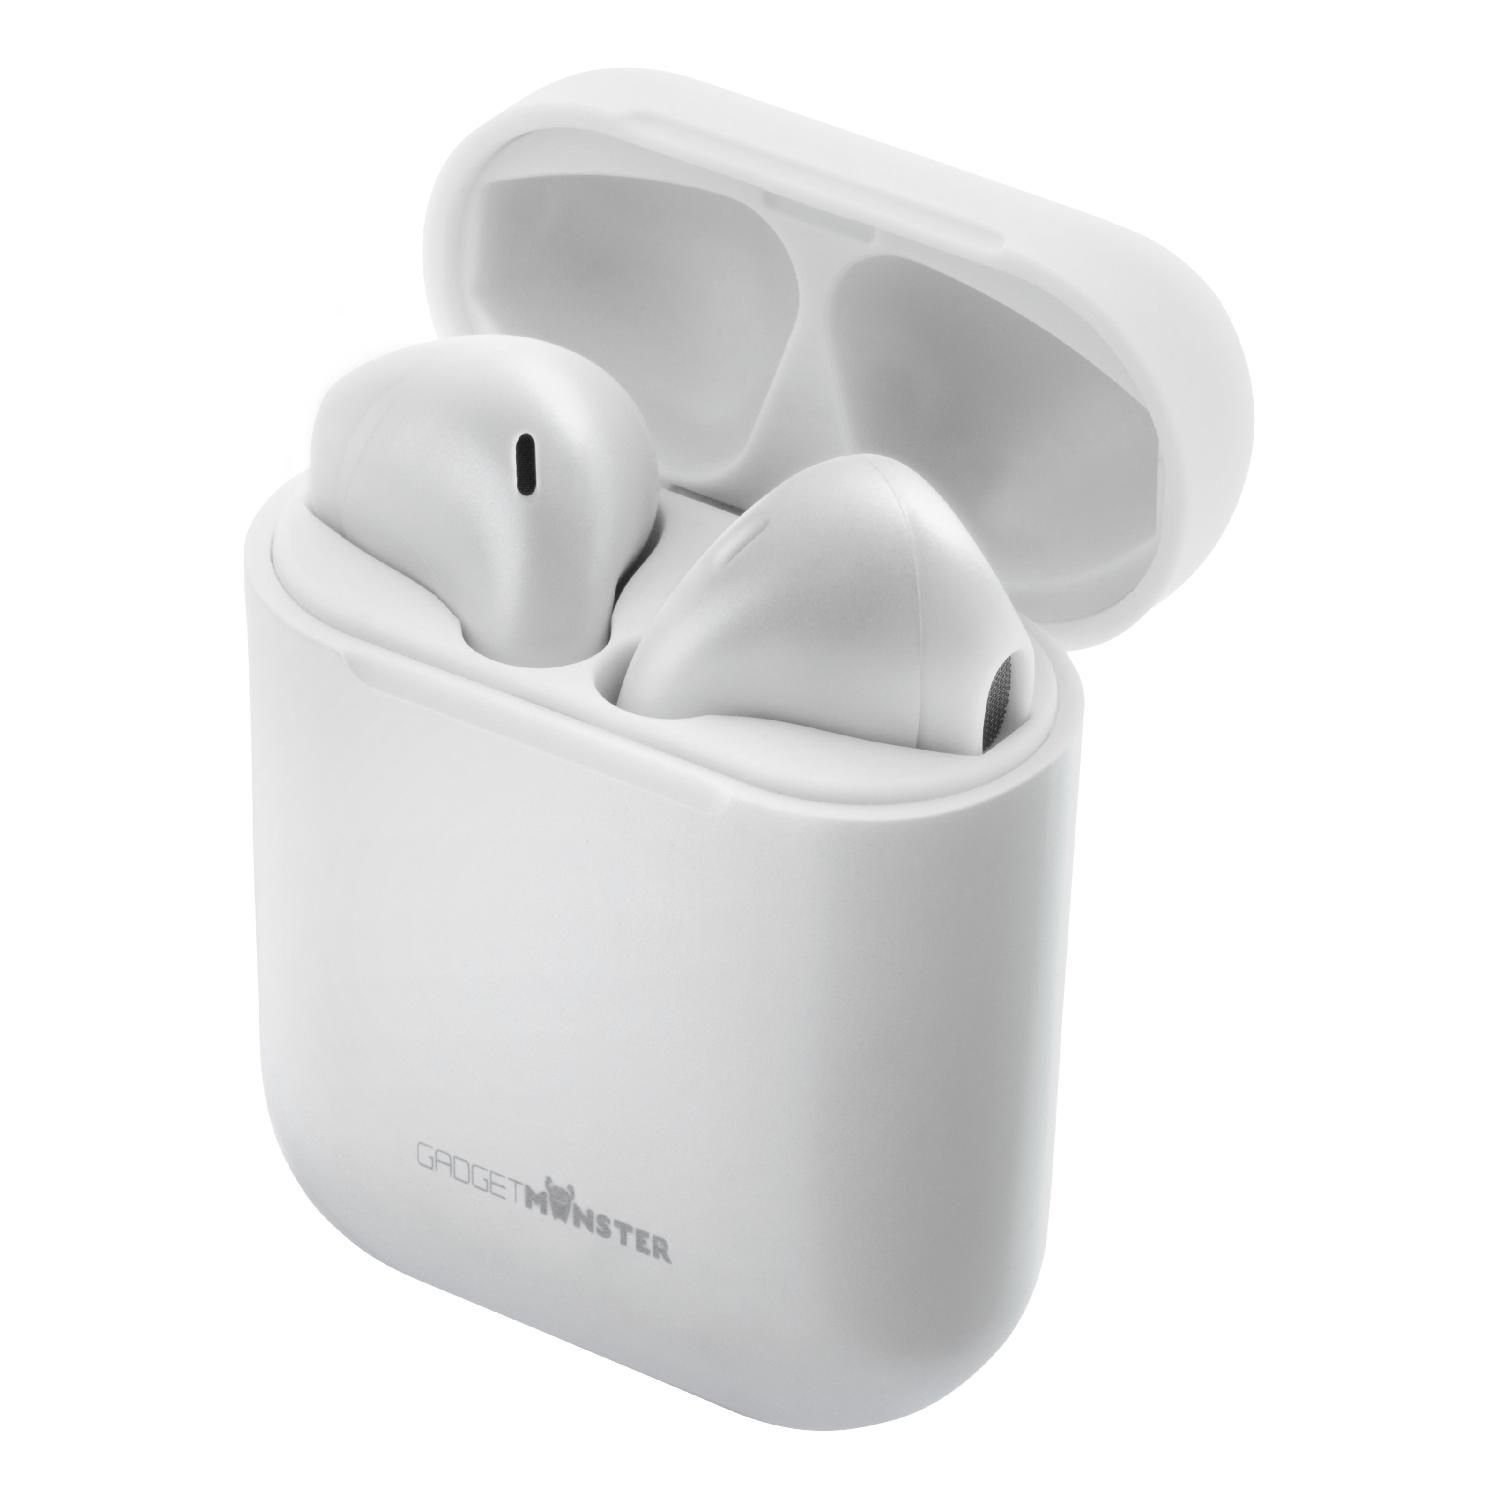 18 weiß 5 GadgetMonster Herstellergarantie) 10m Kopfhörer Kopfhörer bis Spielzeit zu In-Ear Std. TWS Bluetooth (inkl. Jahre